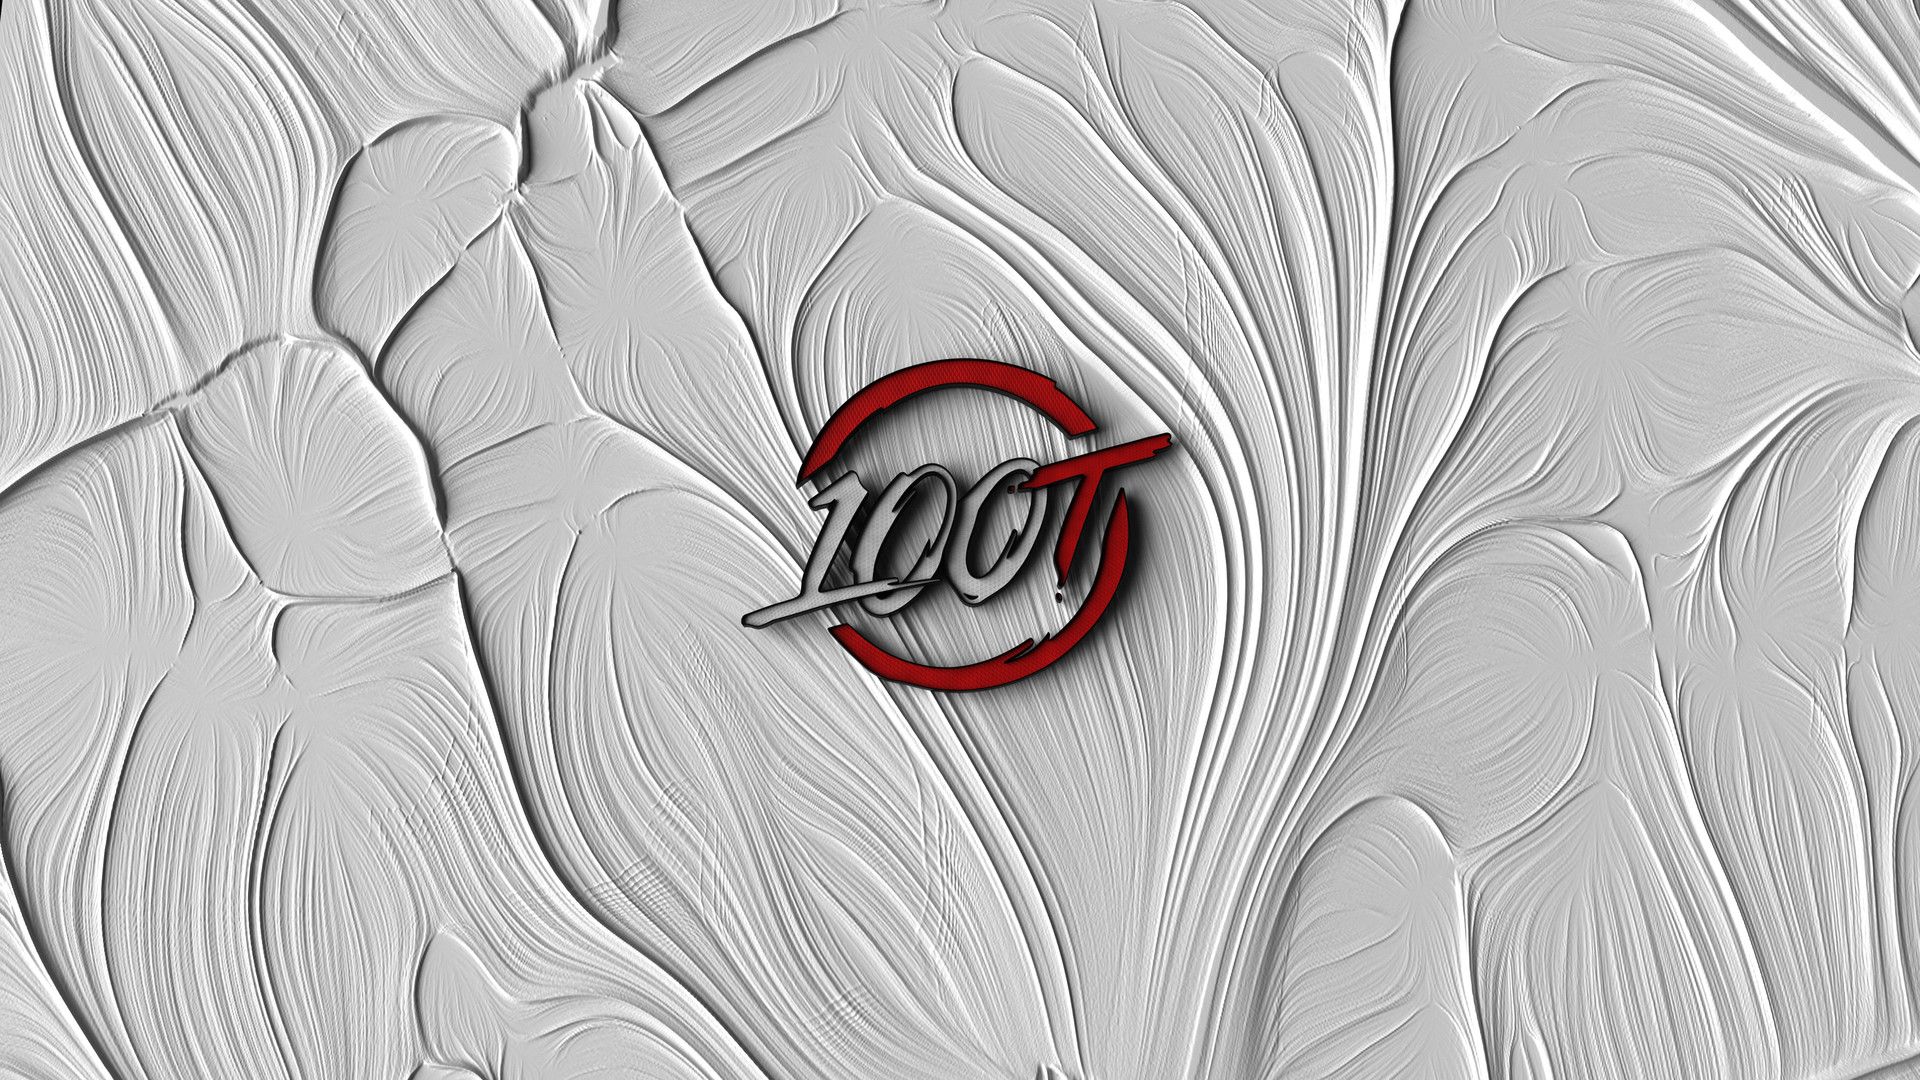 100T Logo, Oli Gent